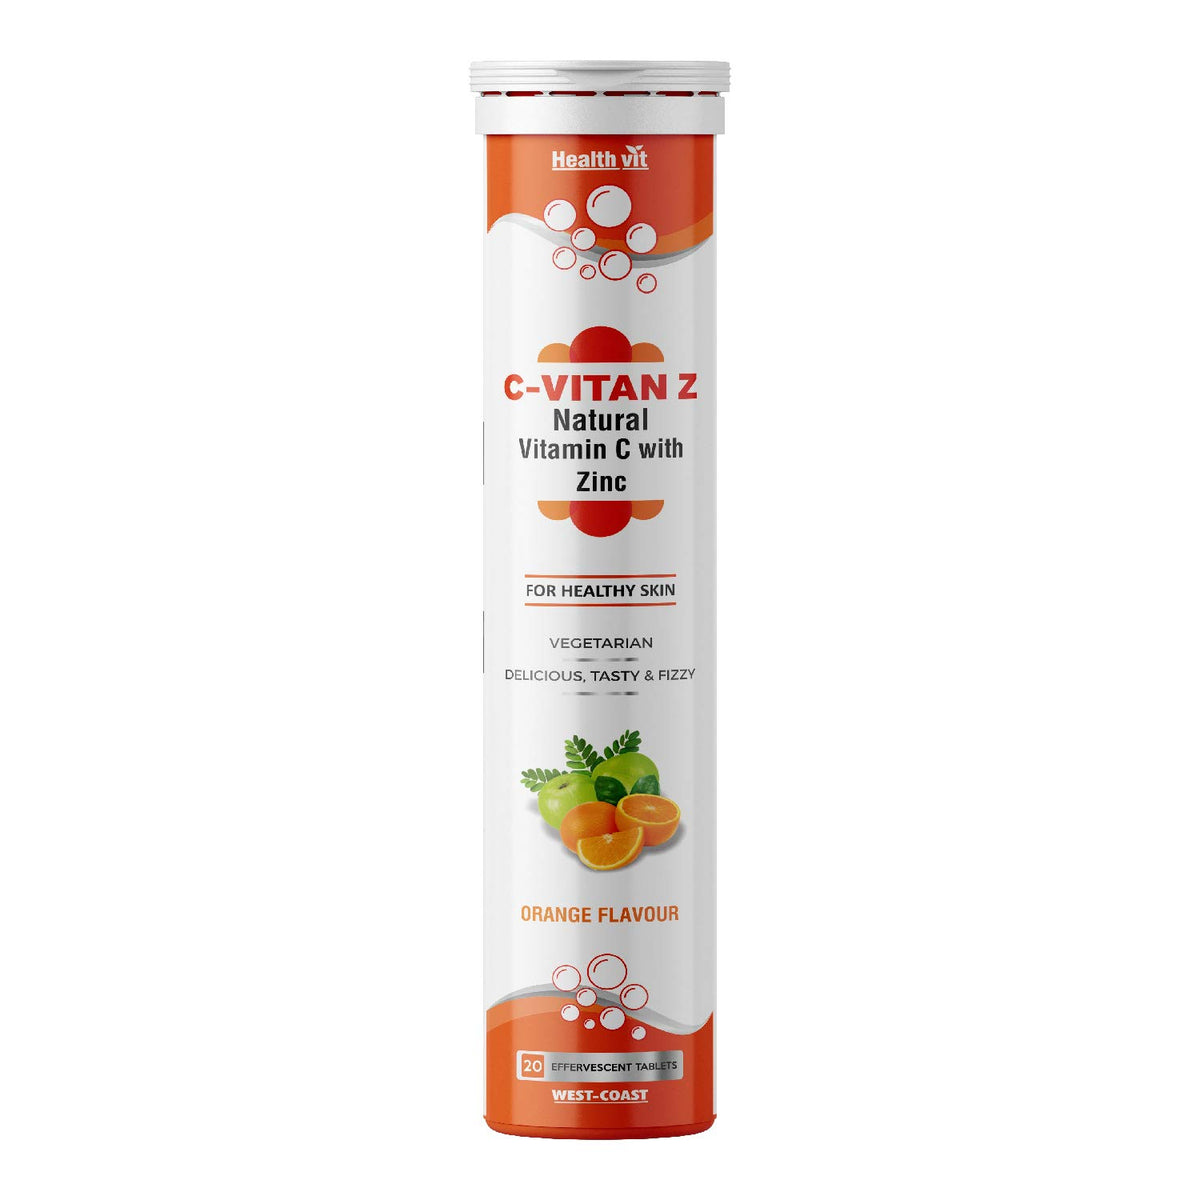 Healthvit C- Vitan-N 1000mg - Natural Antioxidant | Natural Vitamin C With Zinc | Improves Immunity And Skin Health | Vegan And Keto Friendly | 60 Tablets